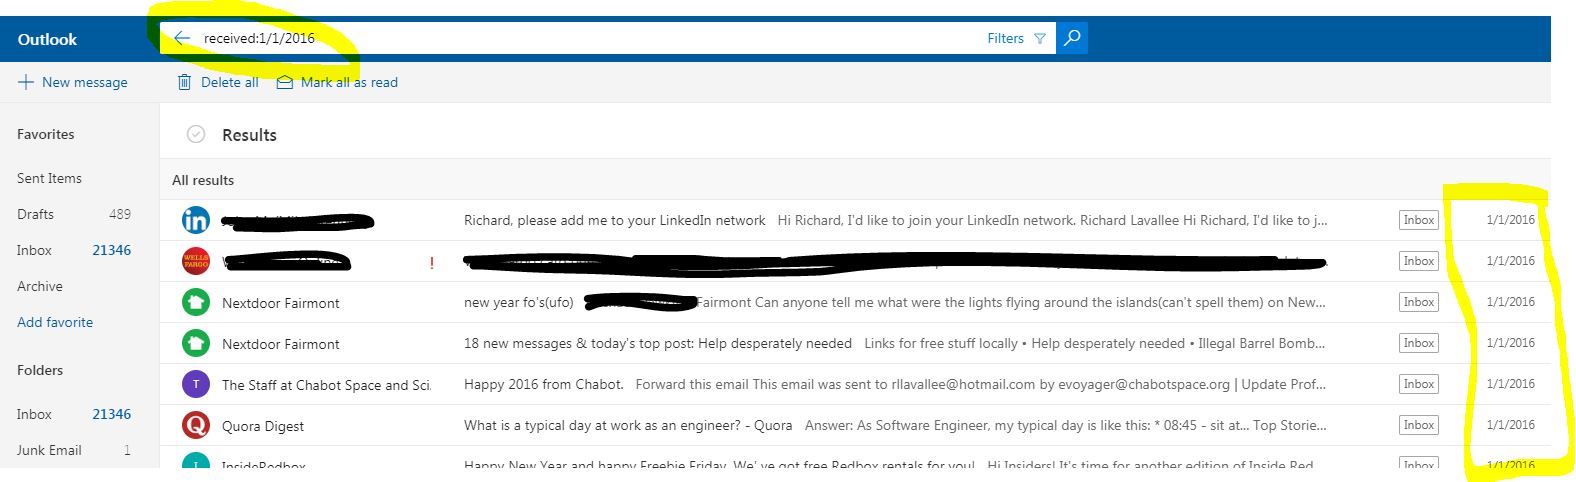 How to Read an MSN Hotmail Inbox - Tech-FAQ